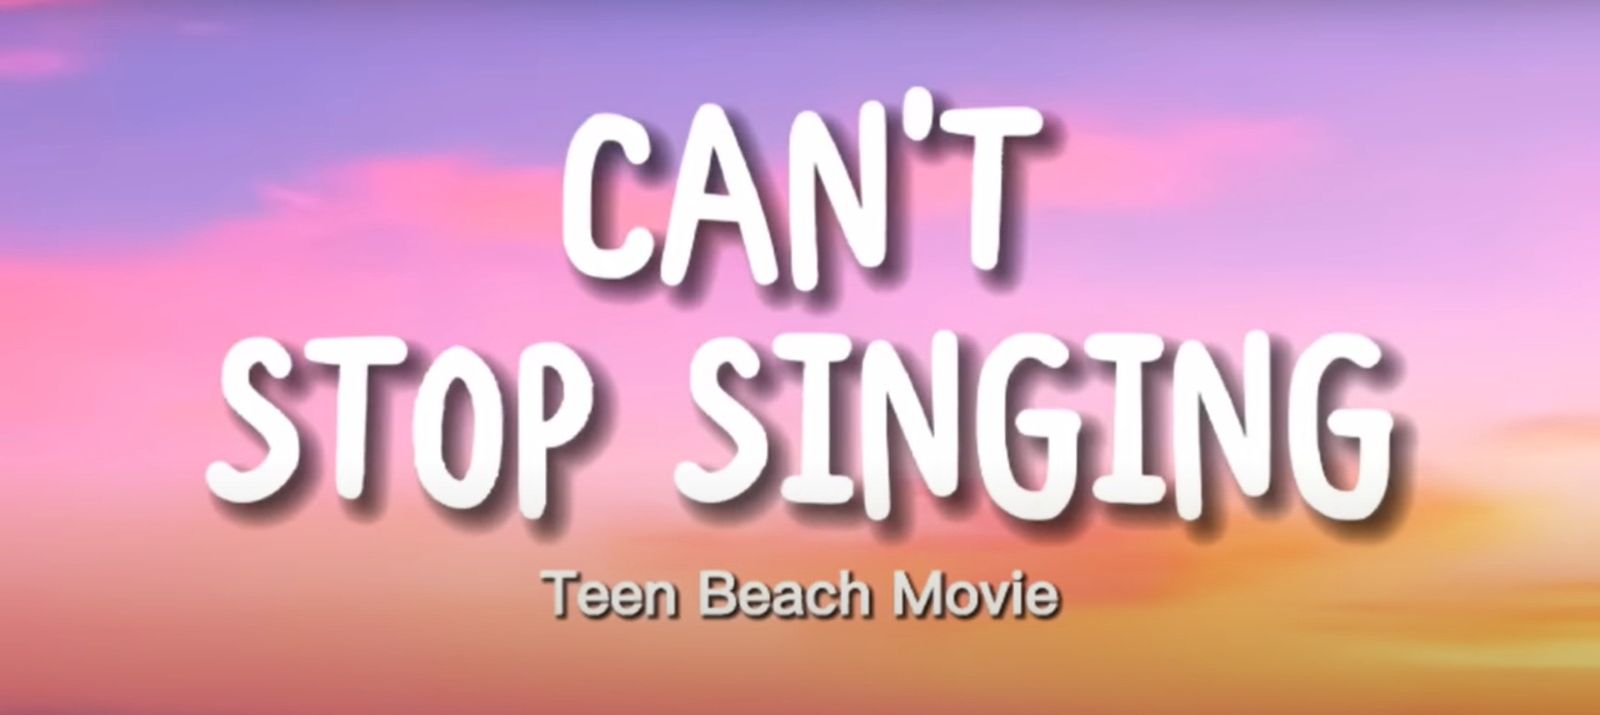 Lirik Lagu Can't Stop Singing yang Trend di TikTok: It’s Just a Song, Berikut Lirik Lengkapnya